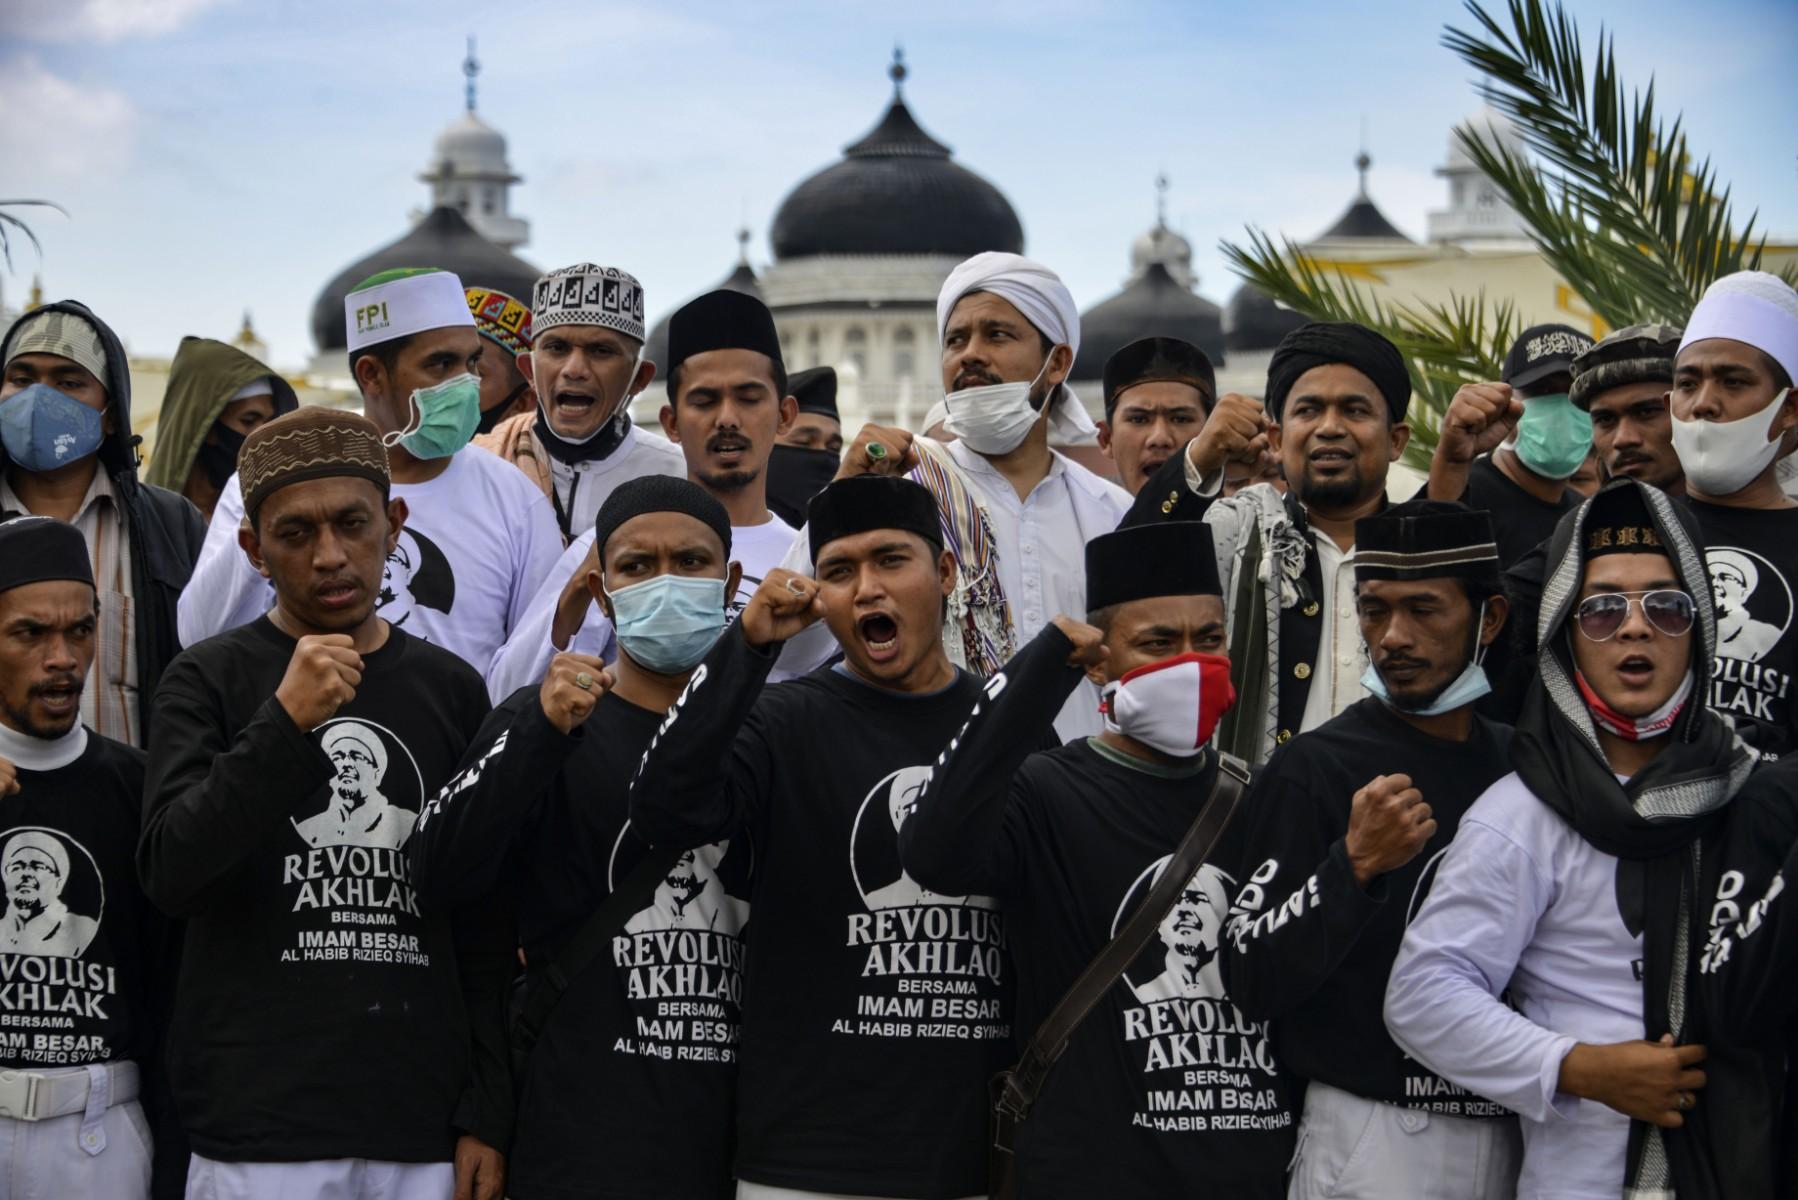 INDONESIA-POLITICS-RELIGION-ISLAM